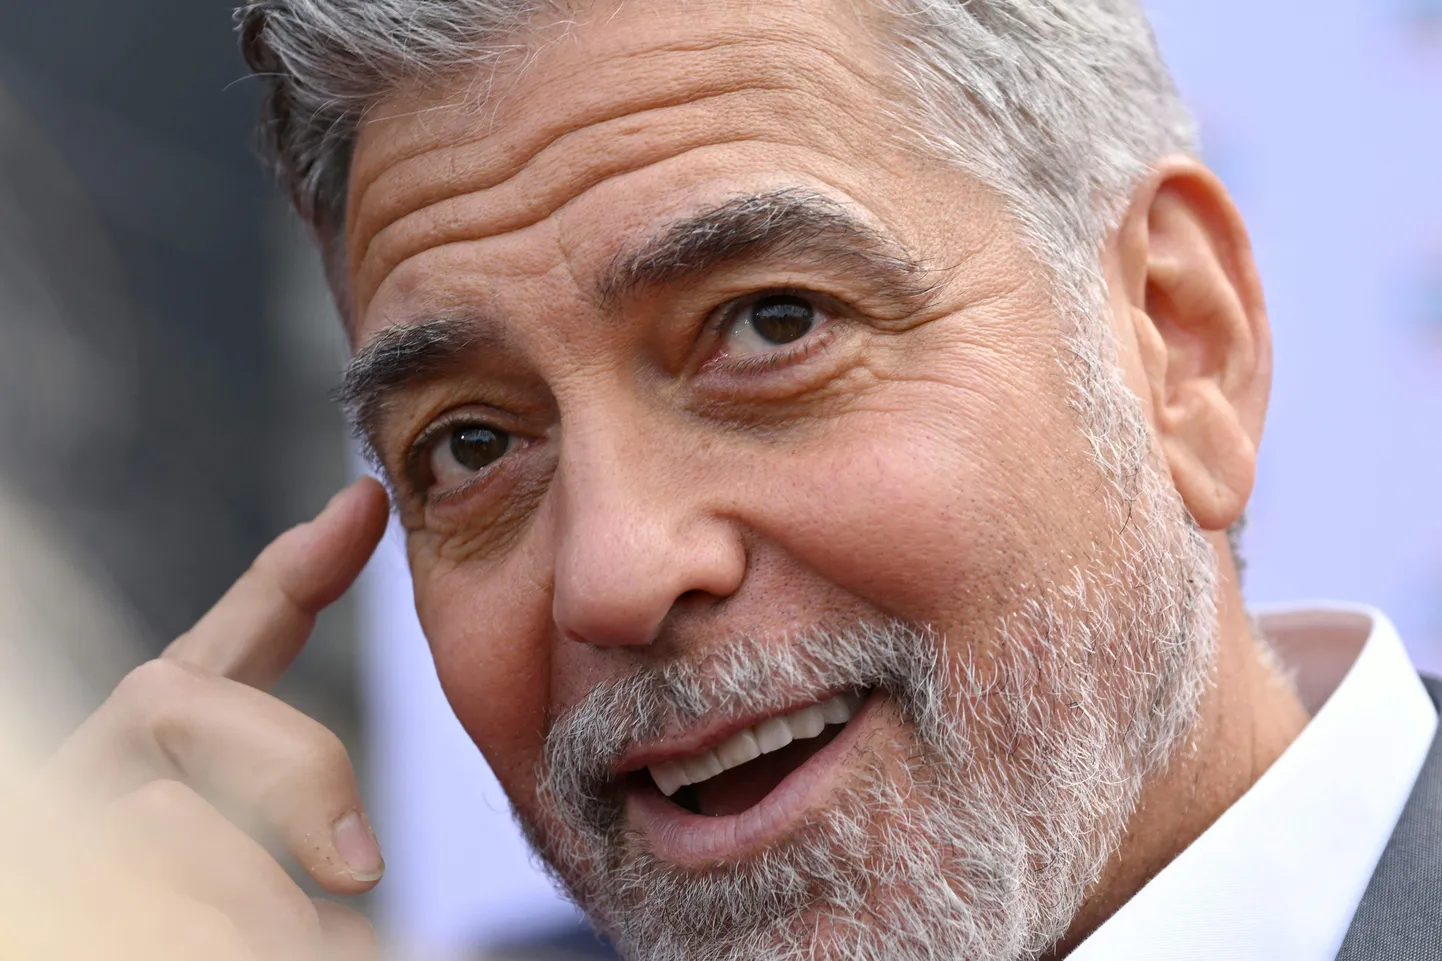 Актер Джордж Клуни